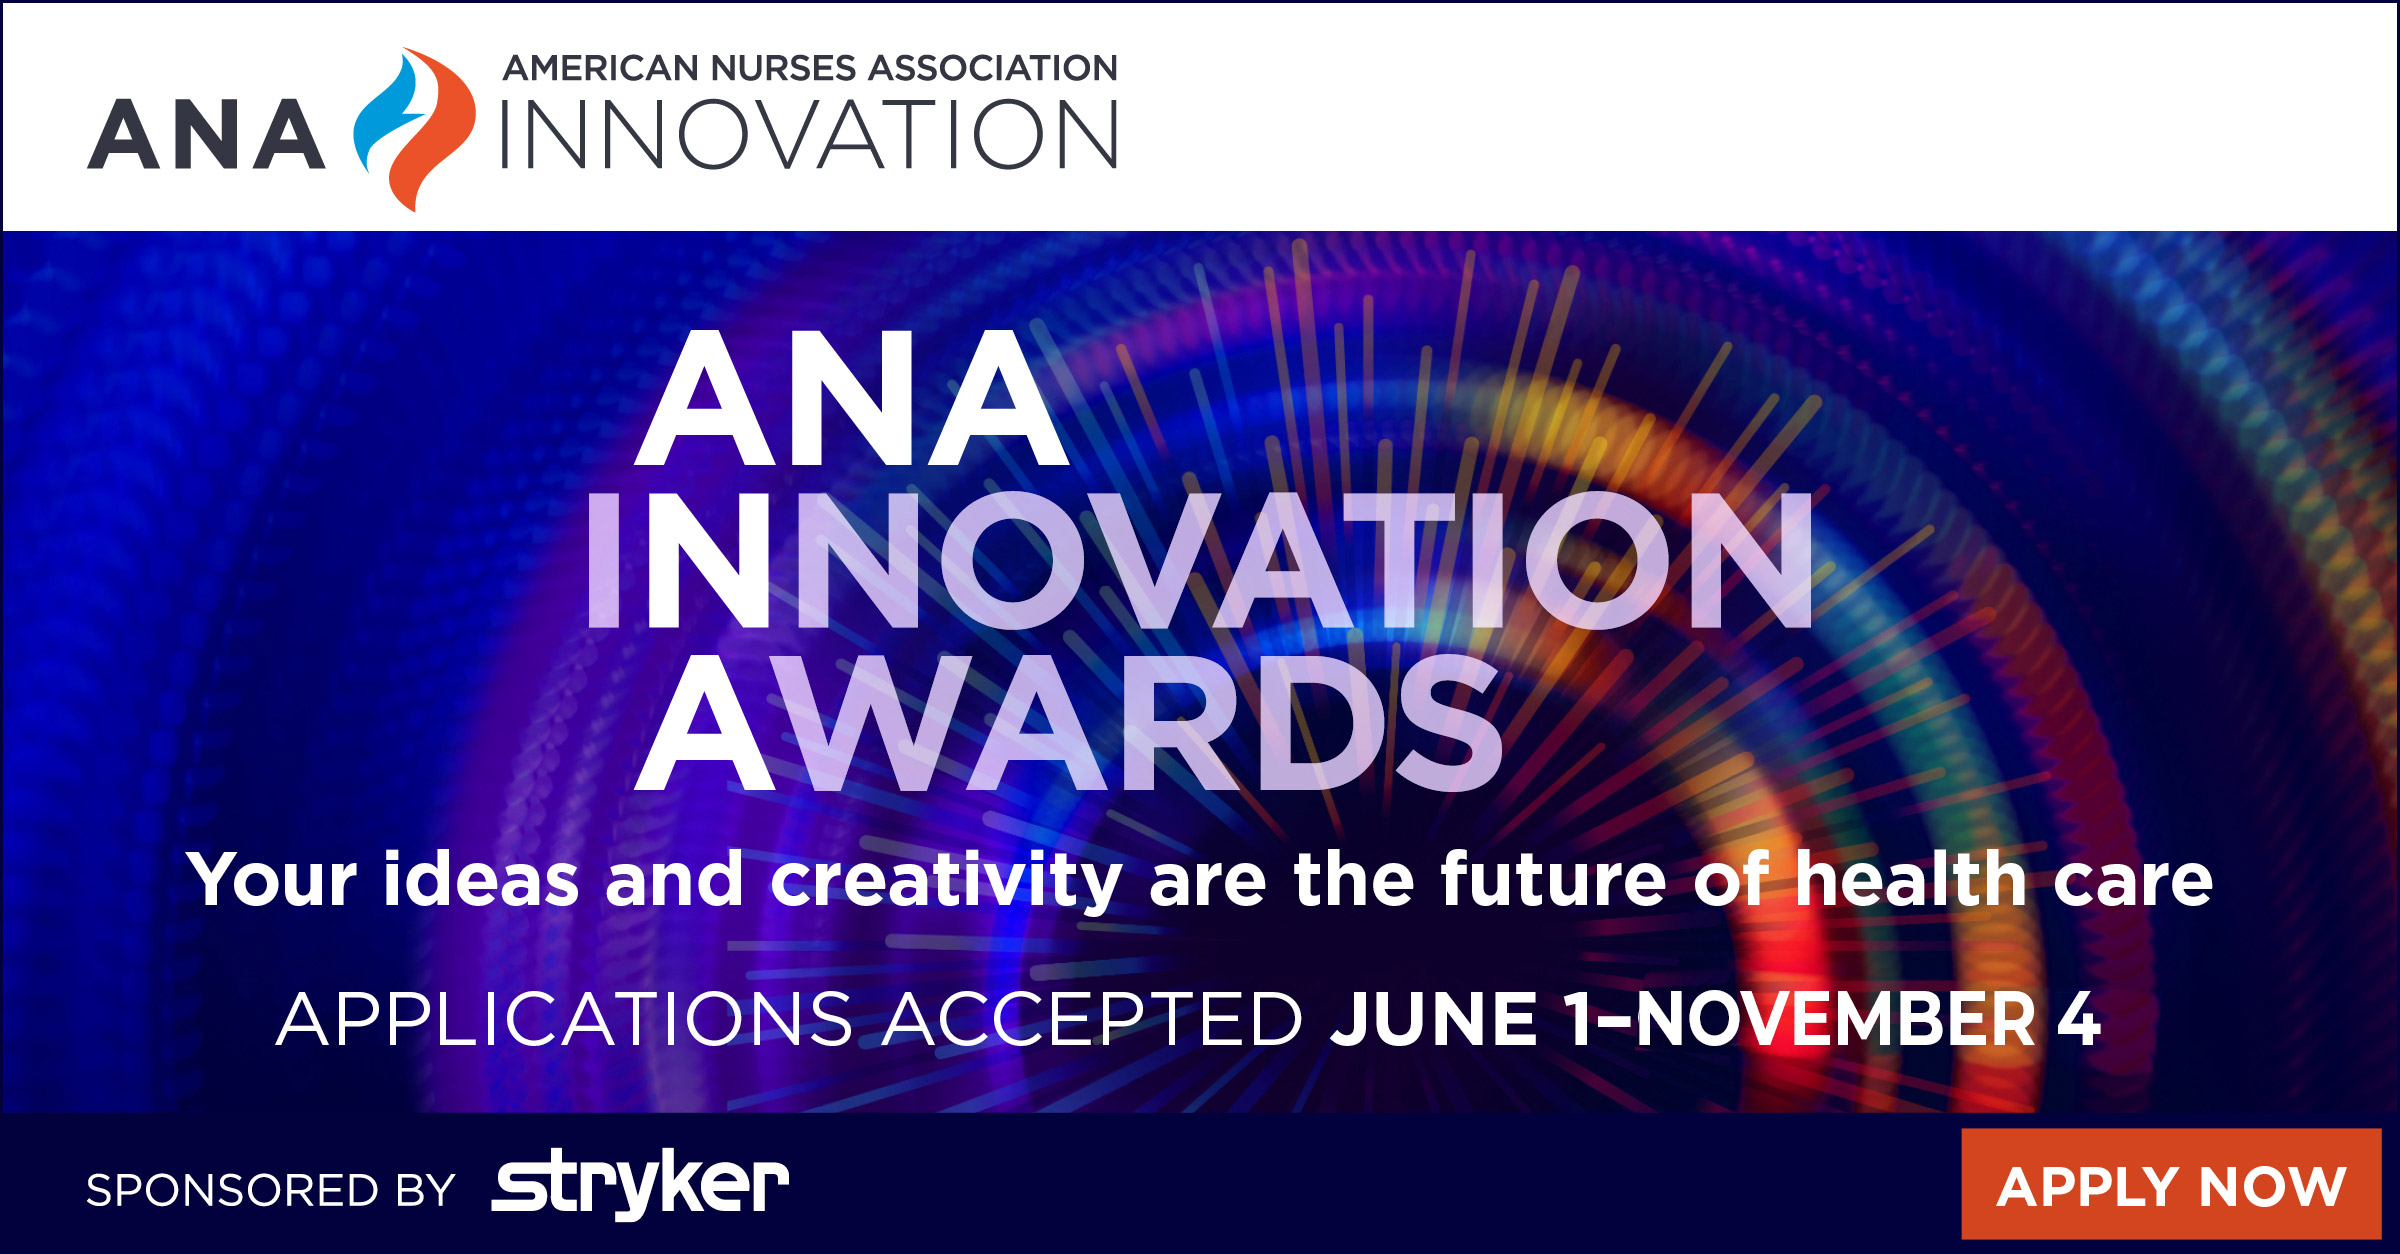 ANA-2744-Innovation-Awards-facebook-PPC-no-stryker.jpg